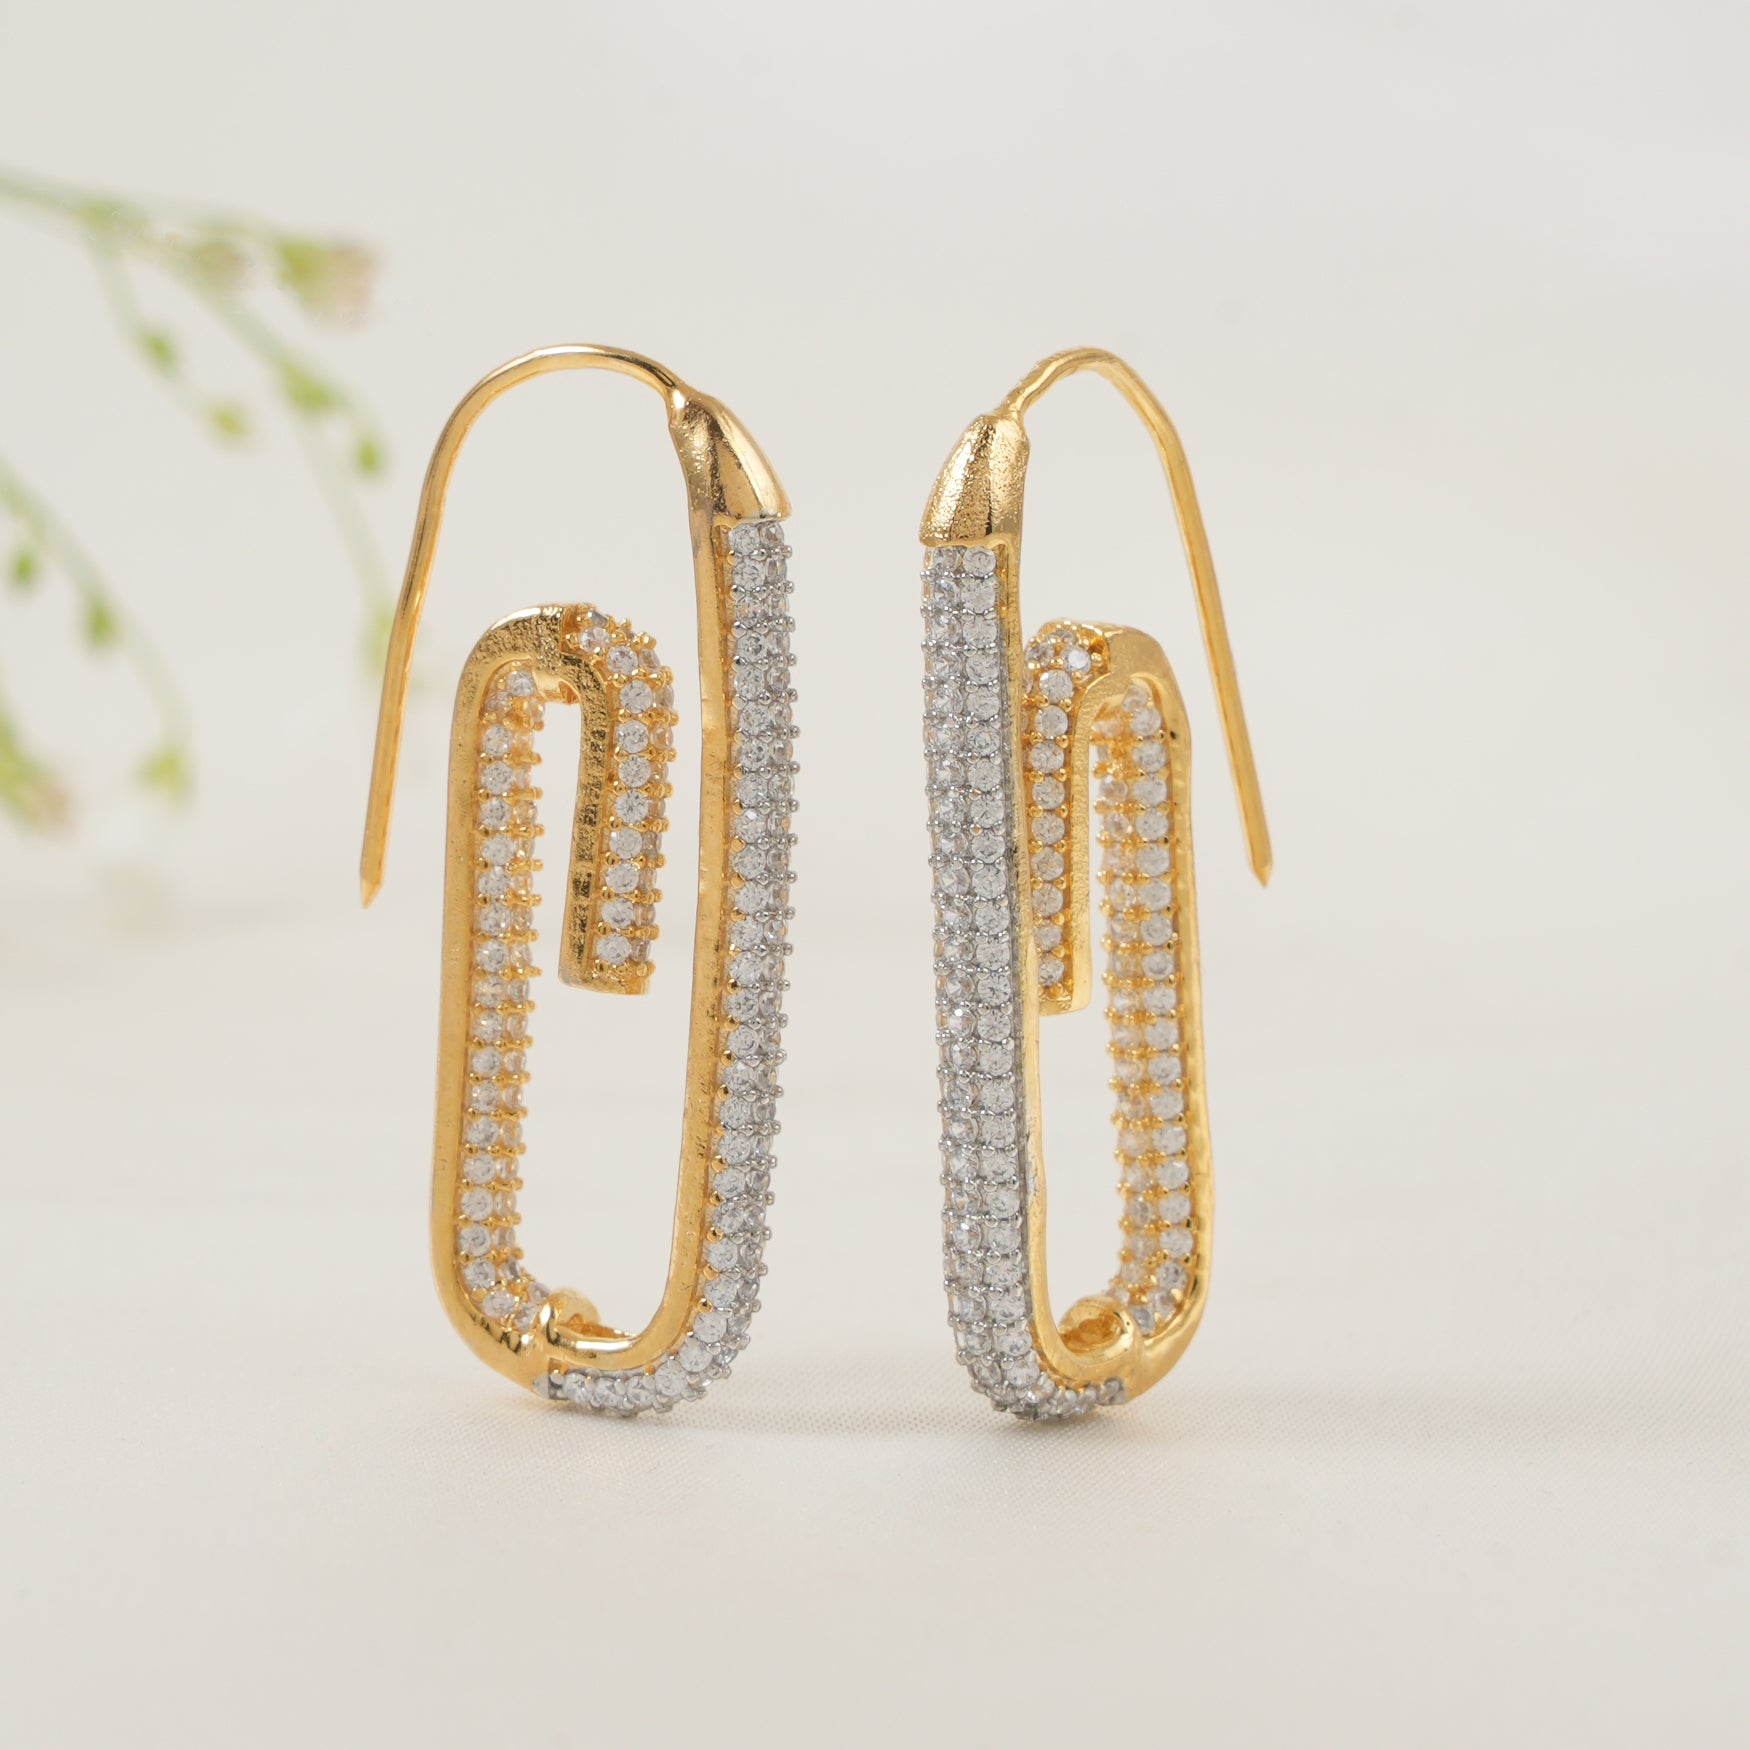 Stunning diamond studded hoop earring for women